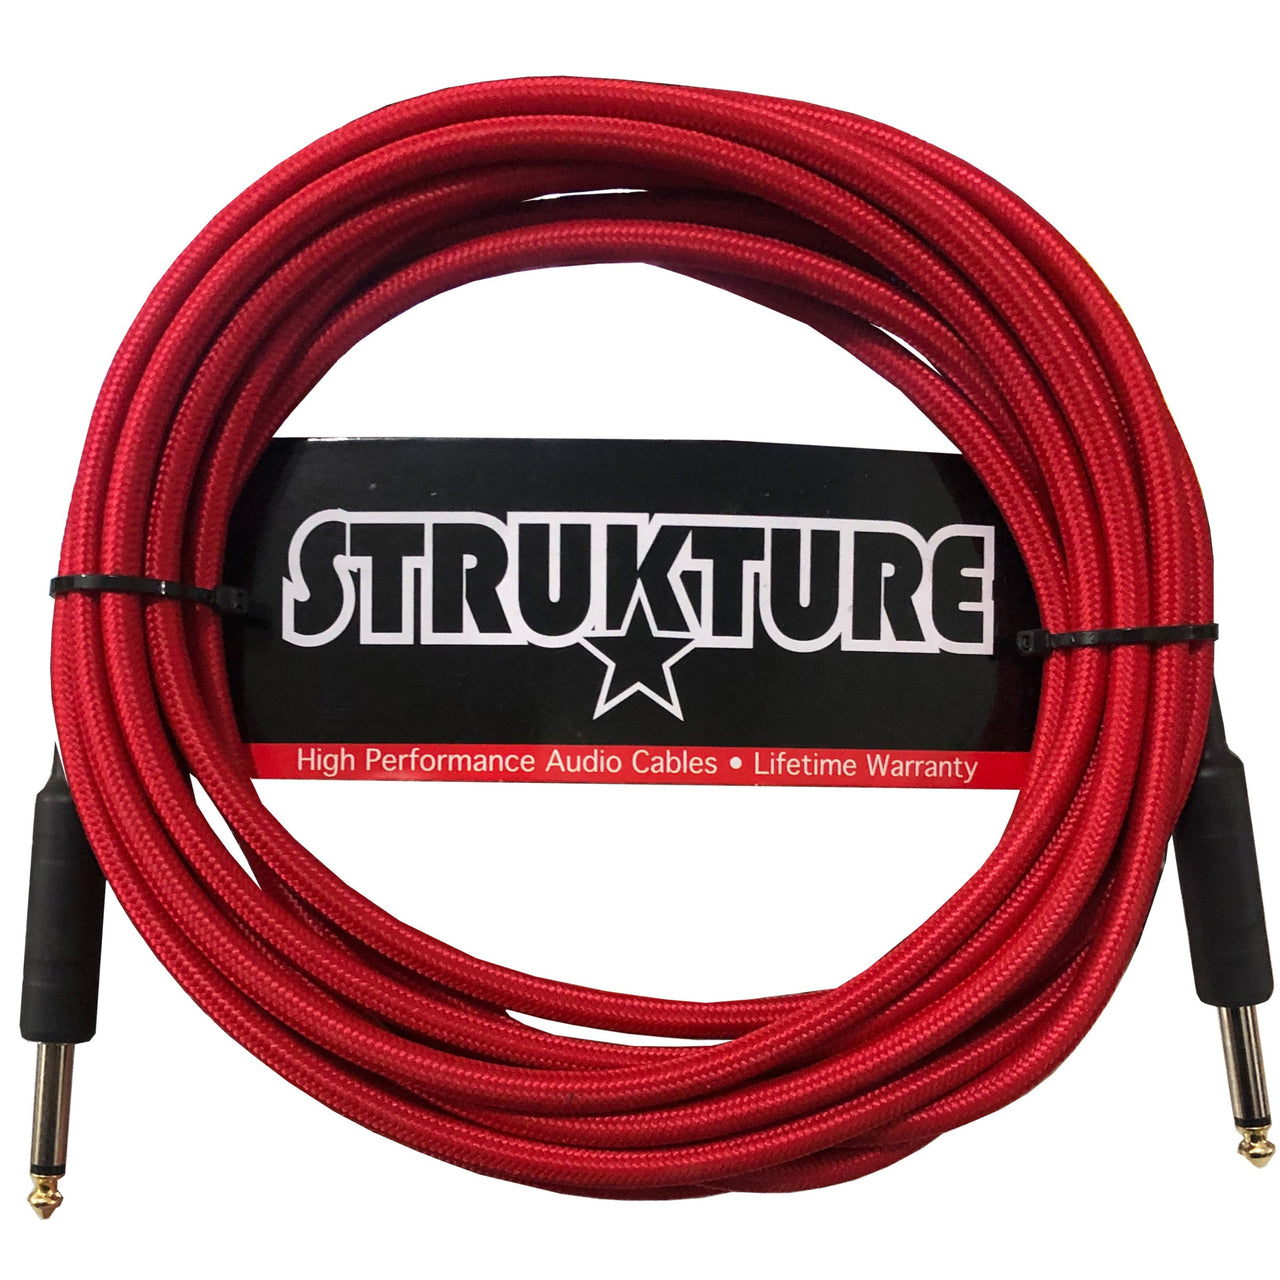 Cable Strukture Sc186rd Para Instrumento Tejido Rojo 5.7 Metros